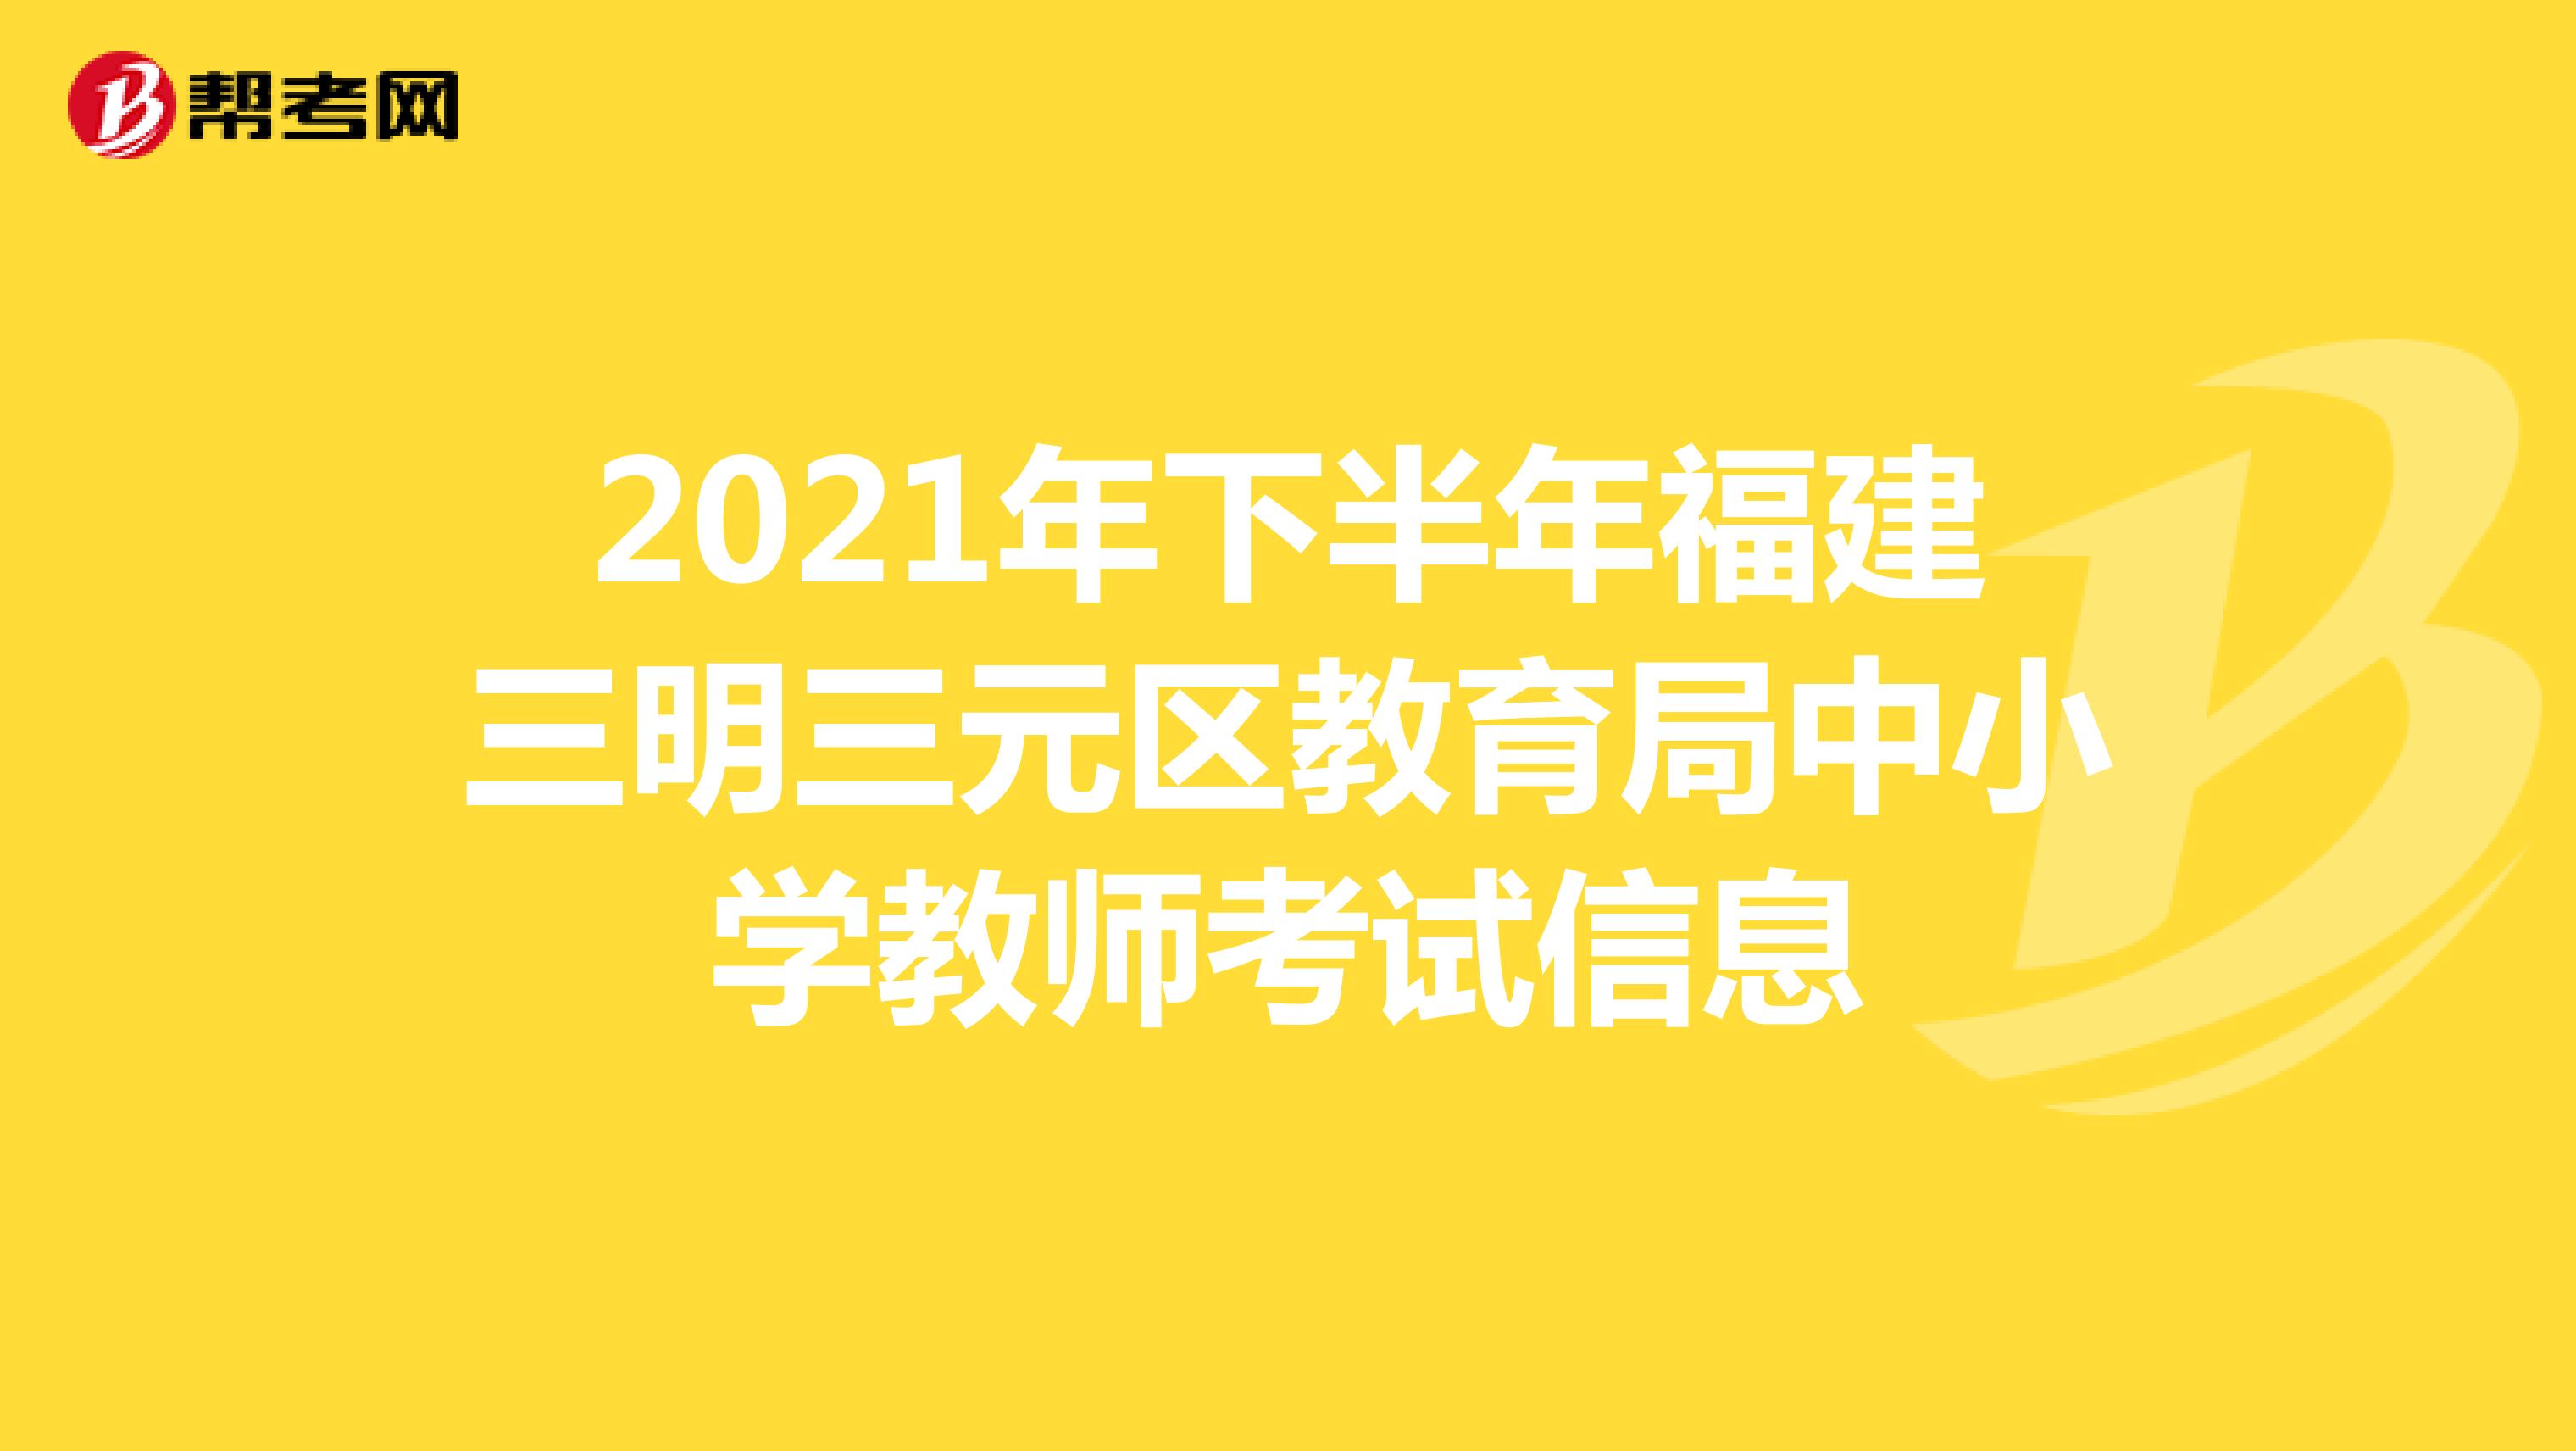 2021年下半年福建三明三元区教育局中小学教师考试信息